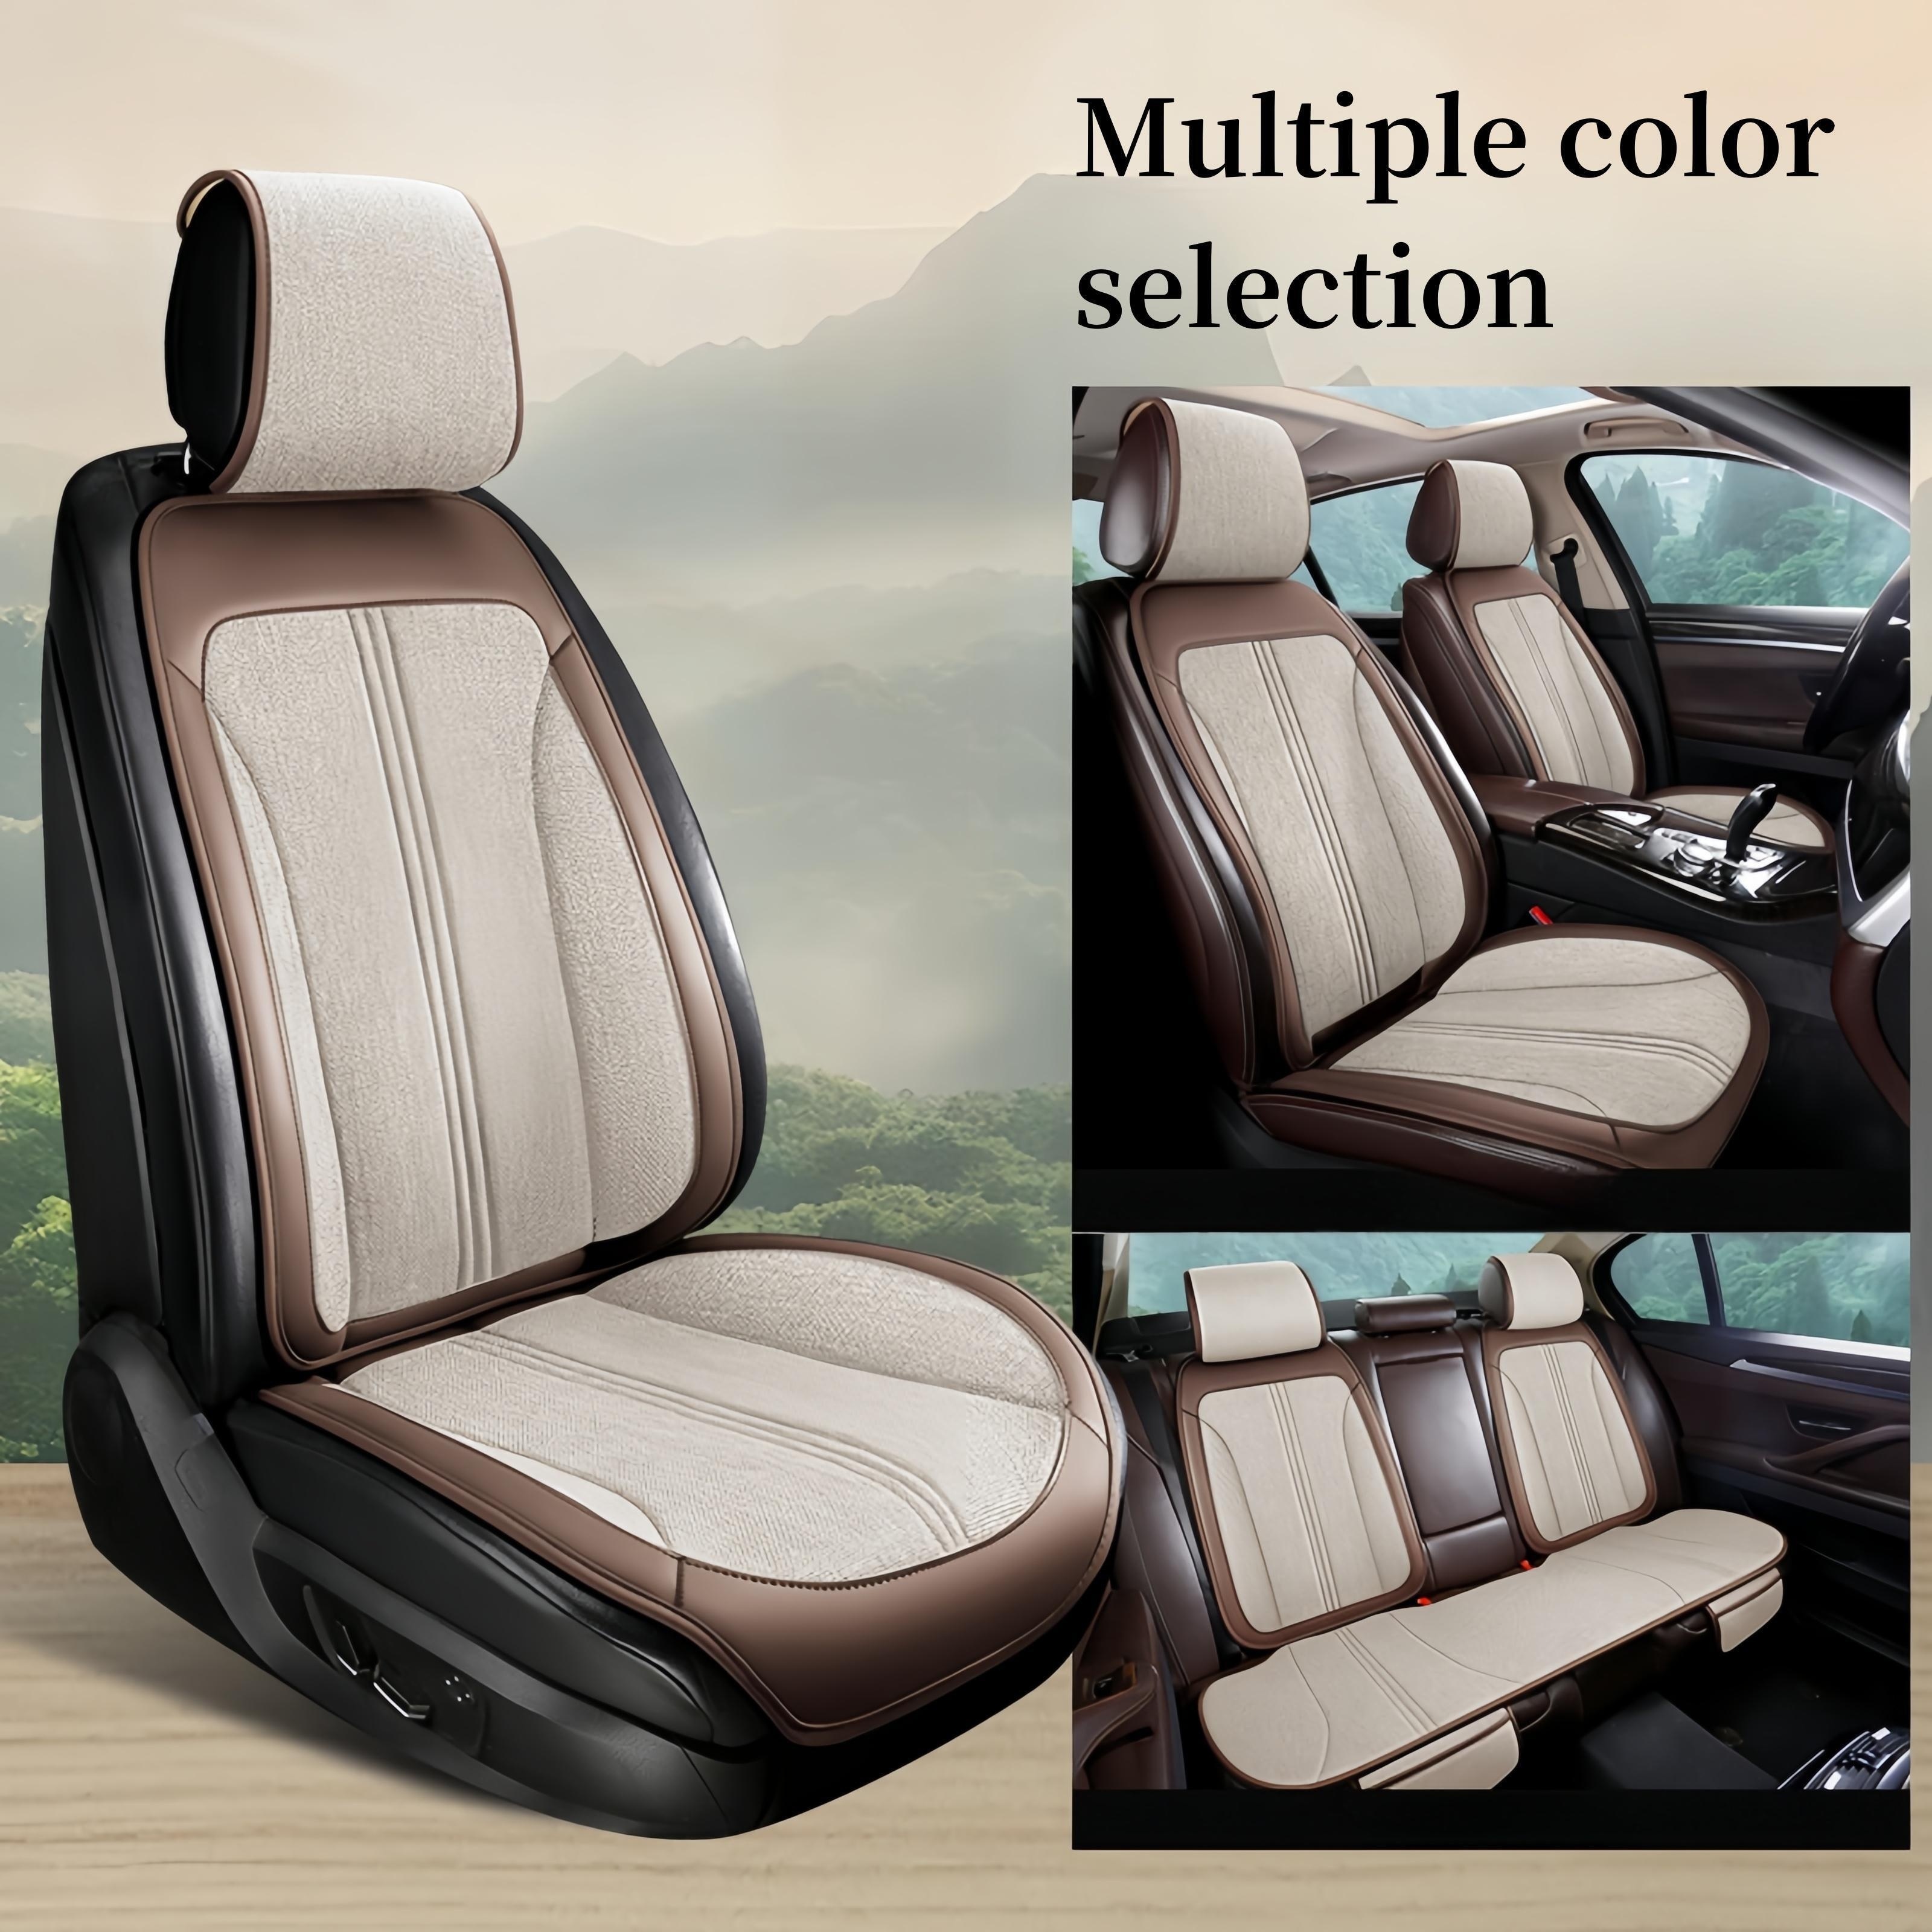 

5 Seats Full Car Full Coverage Premium Hemp Seat Protector Universal Car Seat Covers Lift Your Car Comfort